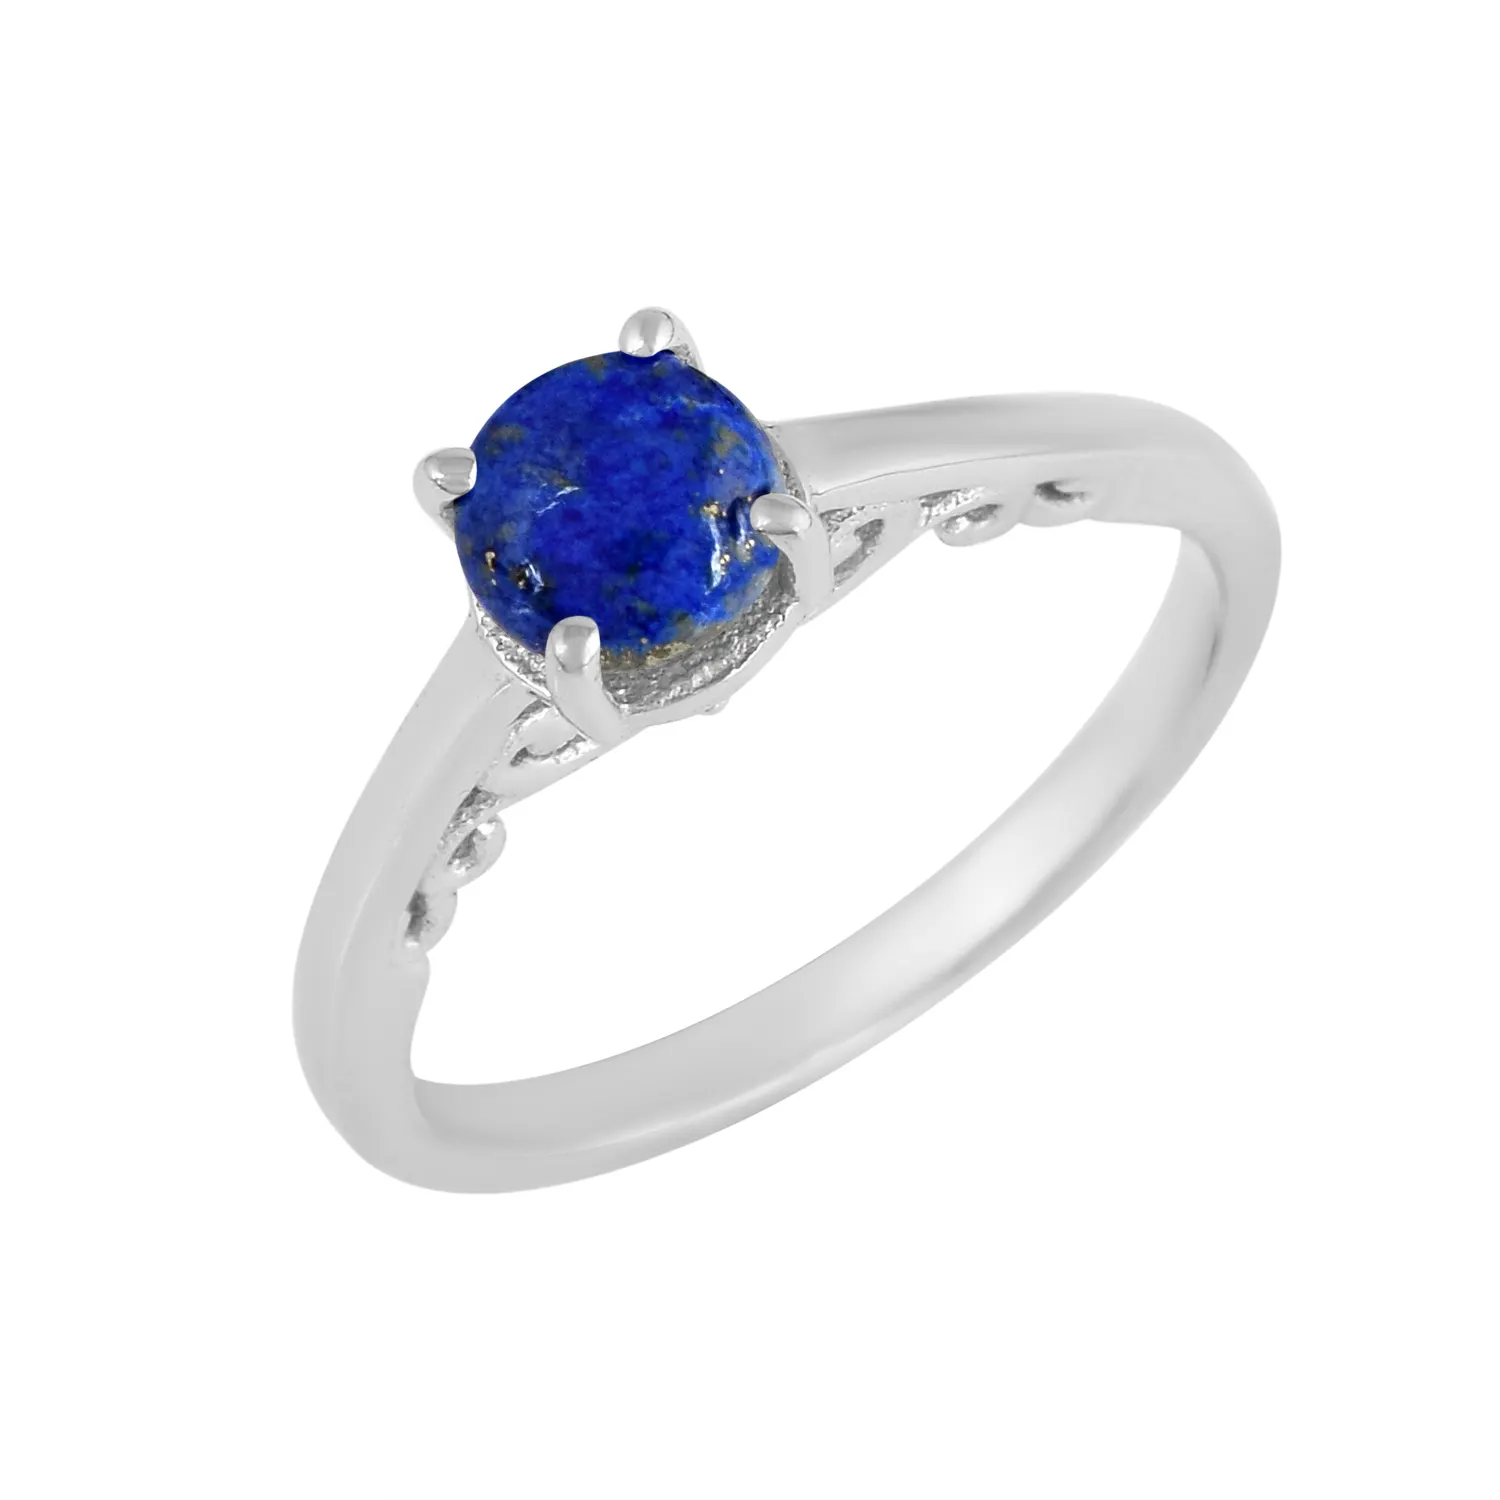 คลาสสิก S925จริงของแข็งเงินสเตอร์ลิงธรรมชาติ Lapis Lazuli Solitaire ชุดแหวนแต่งงานวงปรับเครื่องประดับผู้ผลิตที่ดีที่สุด